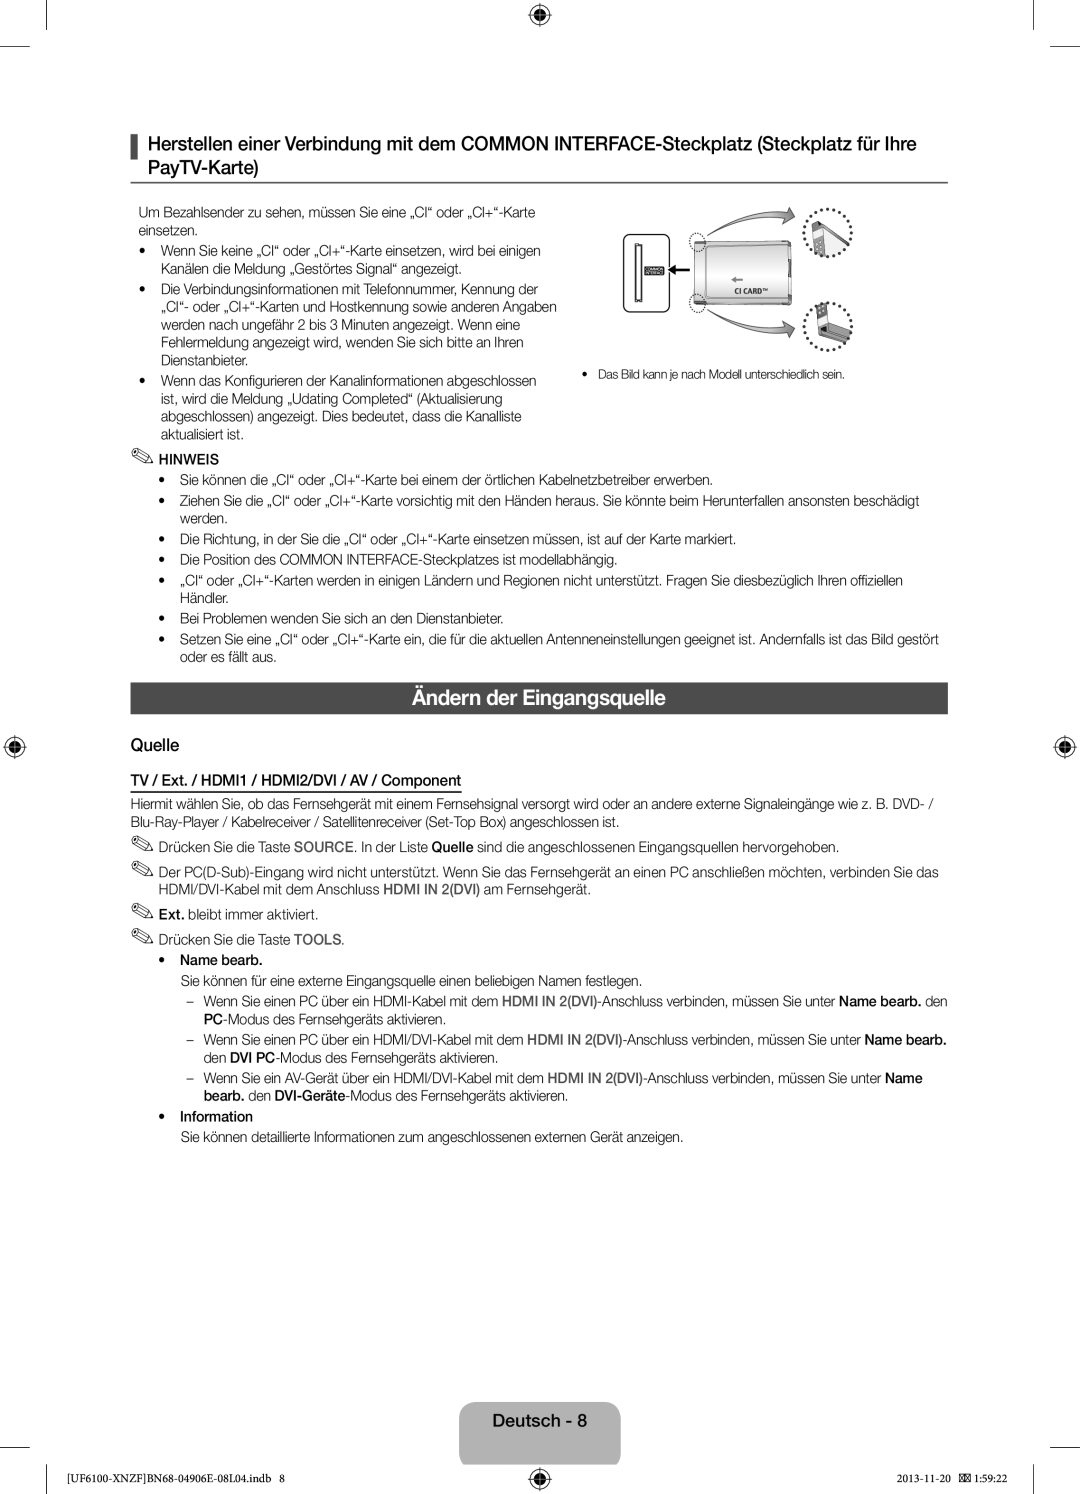 Samsung UE46F6100AWXXH manual Ändern der Eingangsquelle, Quelle, Deutsch, TV / Ext. / HDMI1 / HDMI2/DVI / AV / Component 